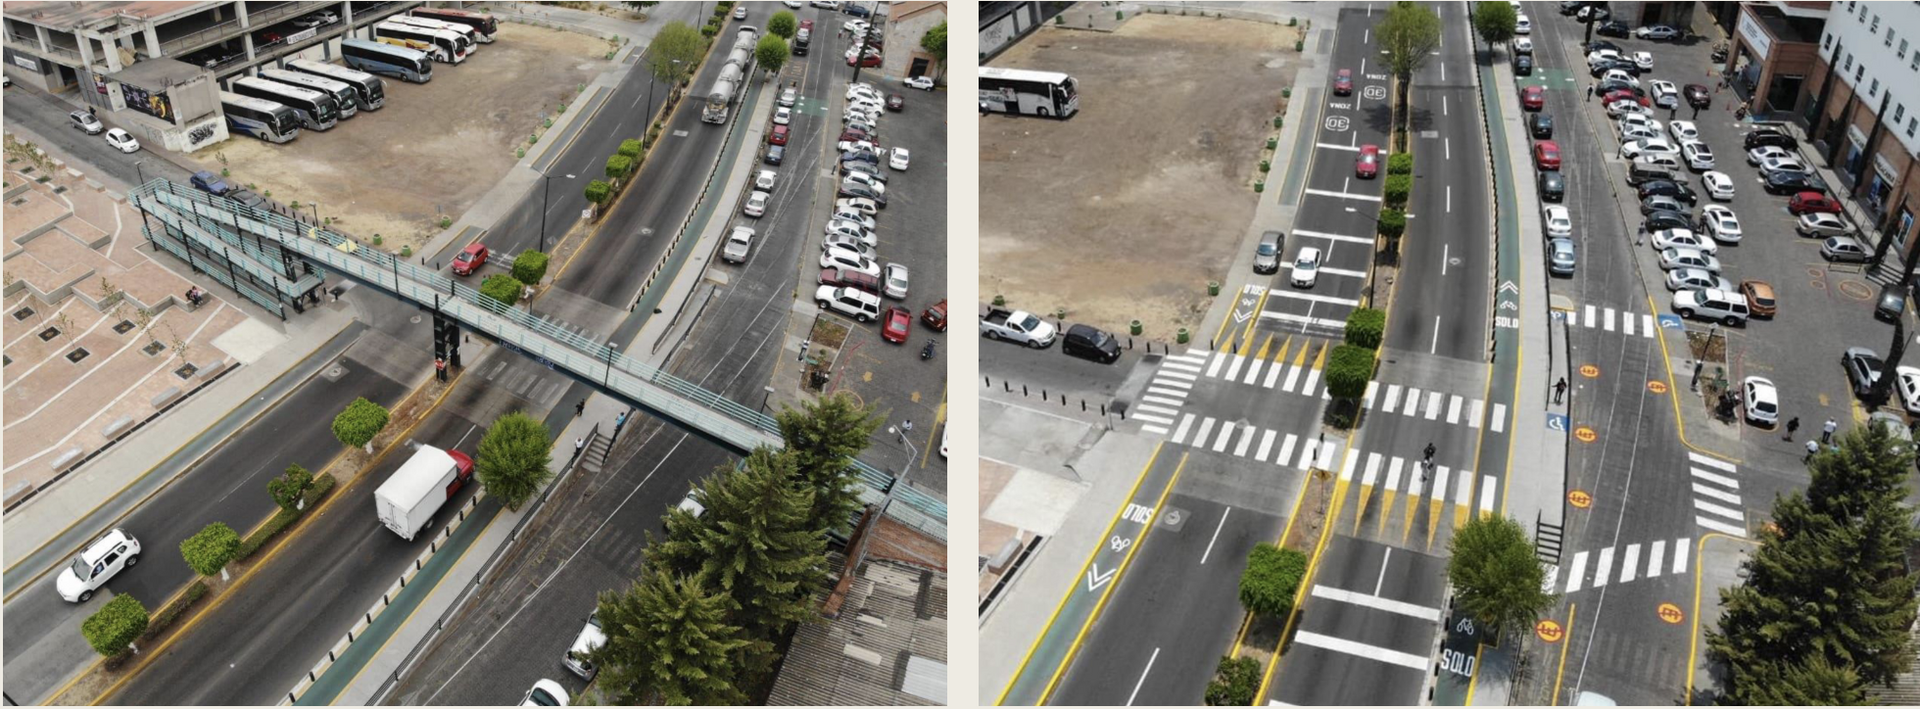 Thành phố Morelia trước và sau khi thay thế cầu bộ hành. Nguồn: Courtesy Hector Zamarron/ Milennio TV Mexico